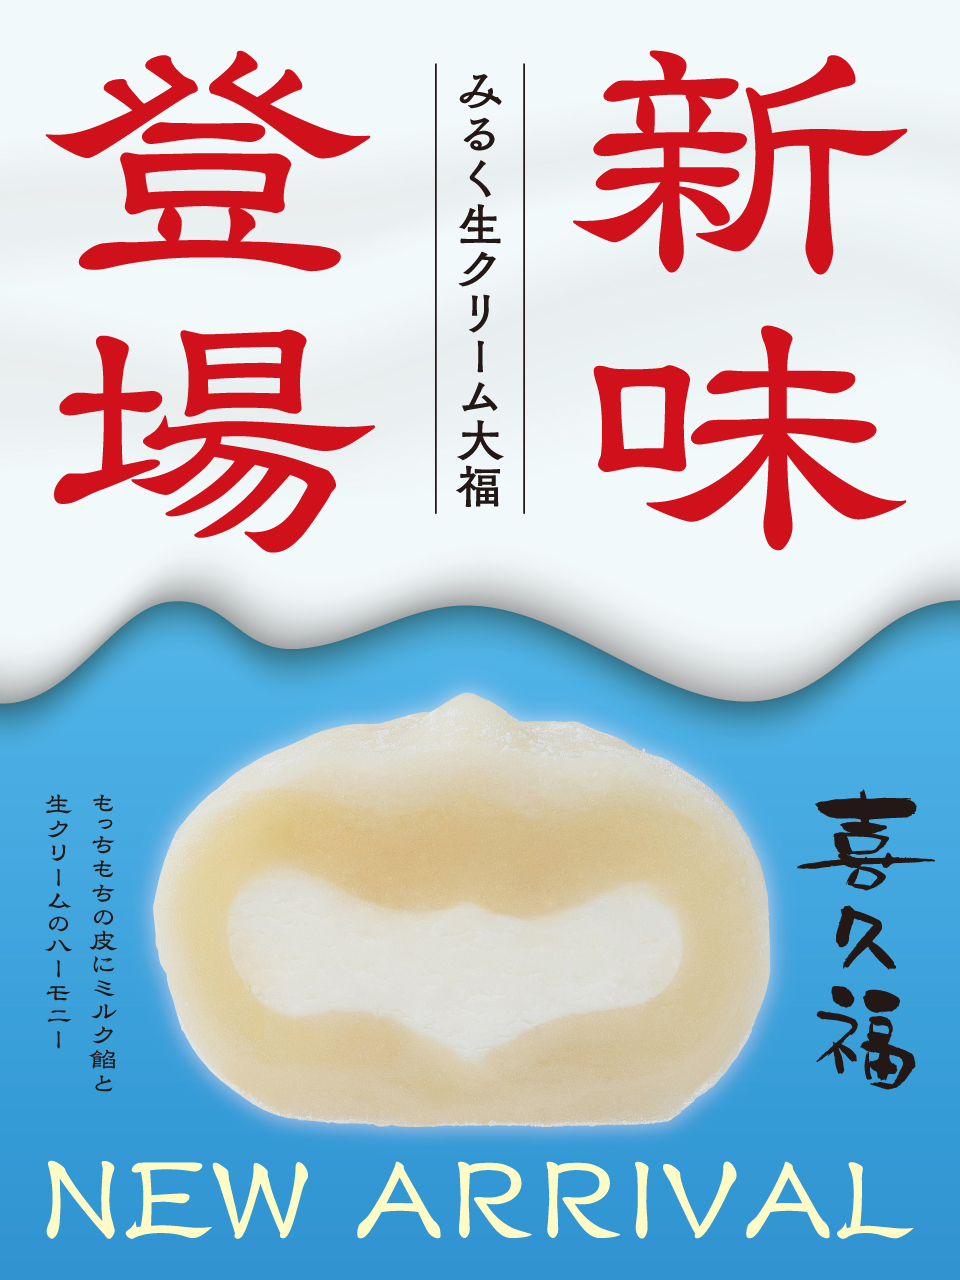 定番4種に新味登場！喜久福『みるく生クリーム』が11月1日から販売されるみたい！